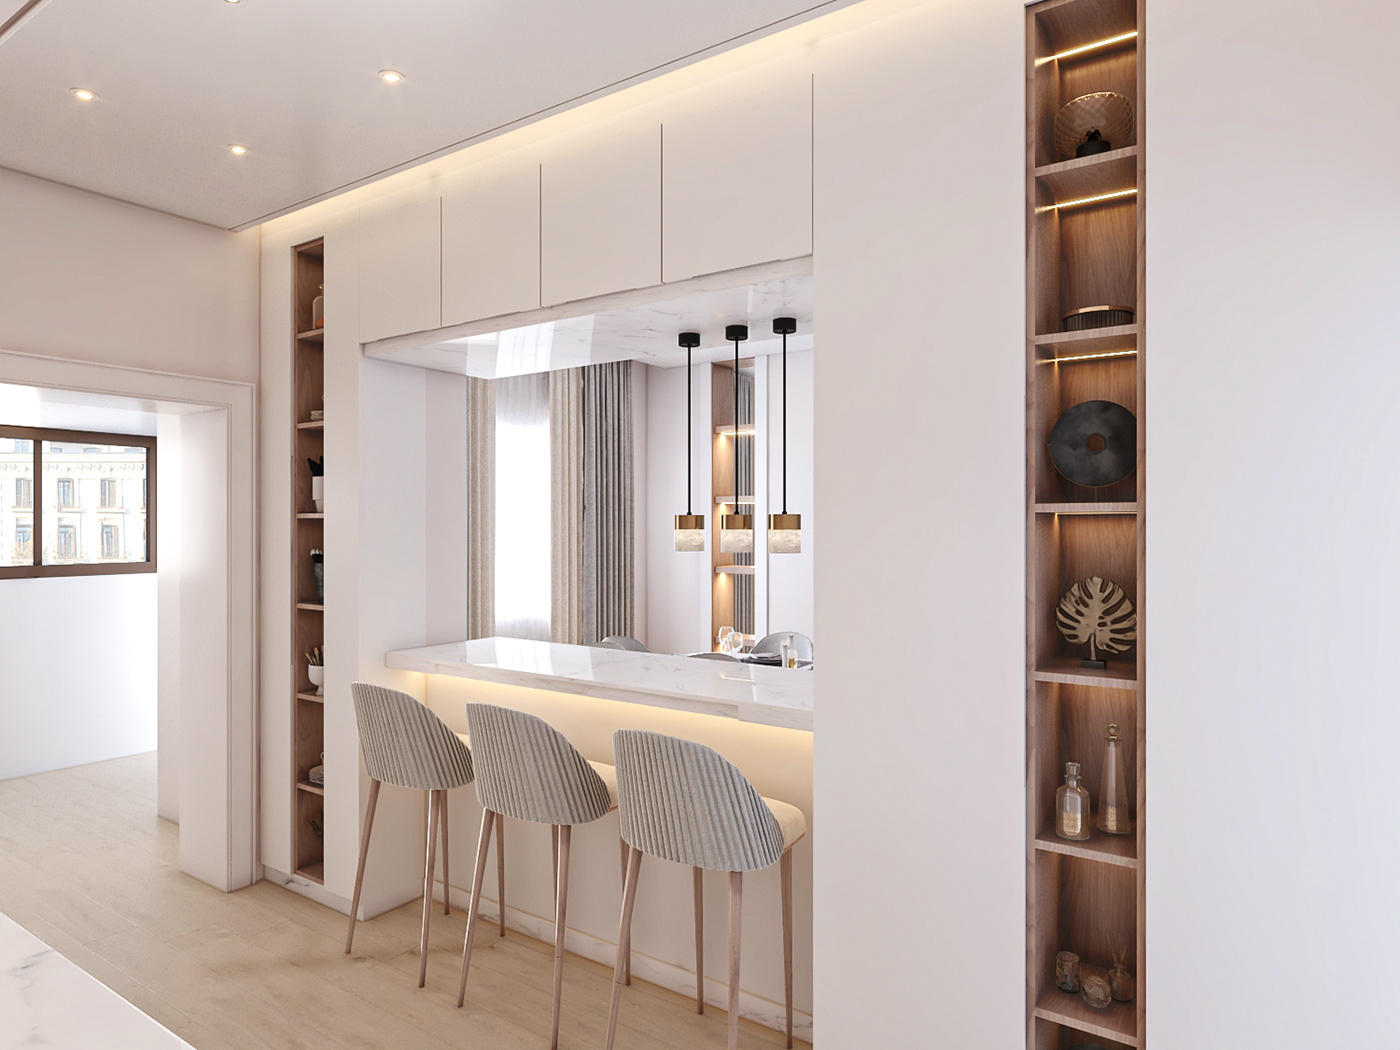 indoor 3ds max Render visualization interior design  architecture modern